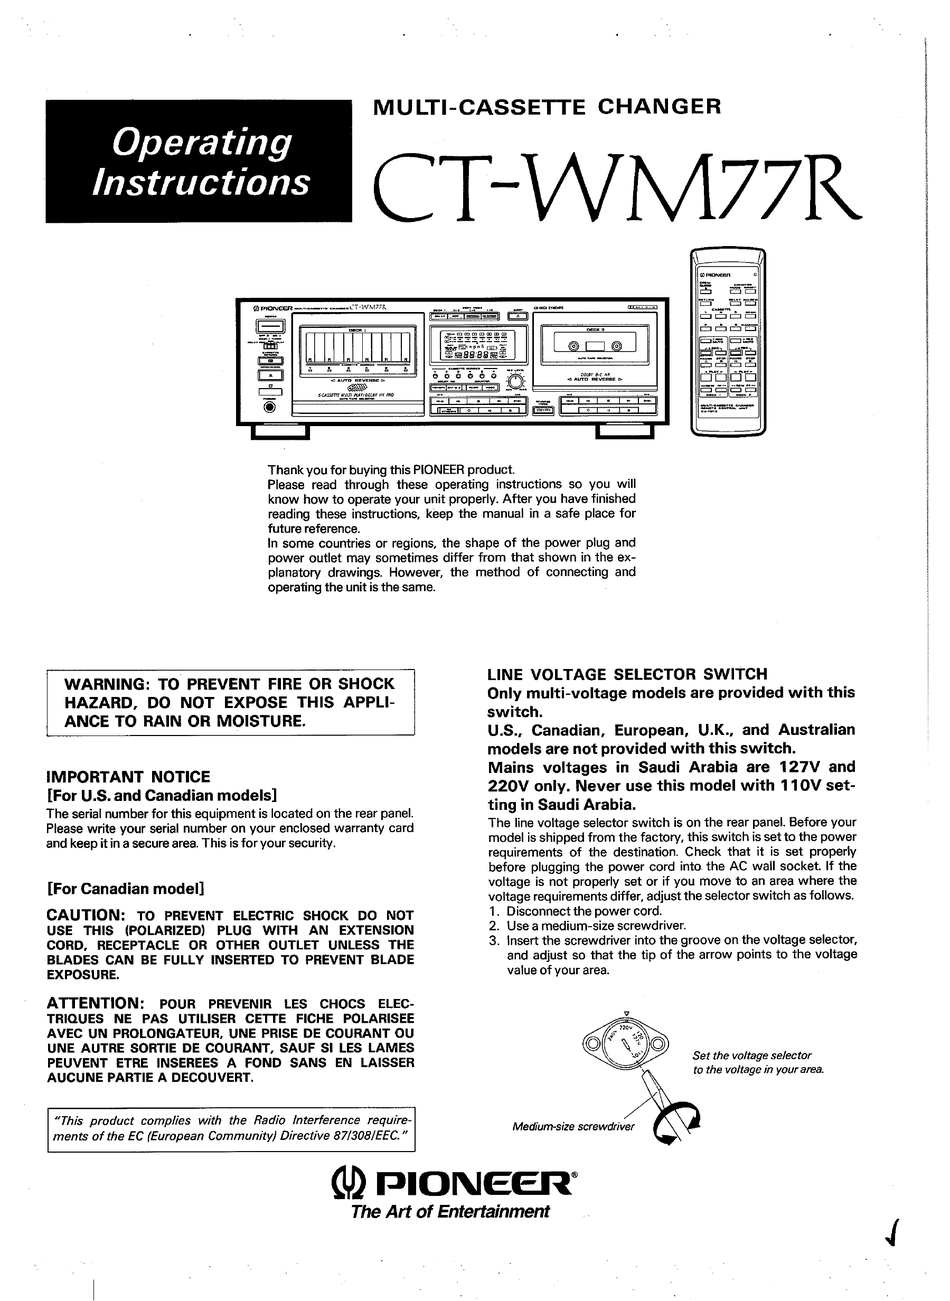 Bedienungsanleitung-Operating Instructions für Pioneer CT-M6R,CT-M5R 